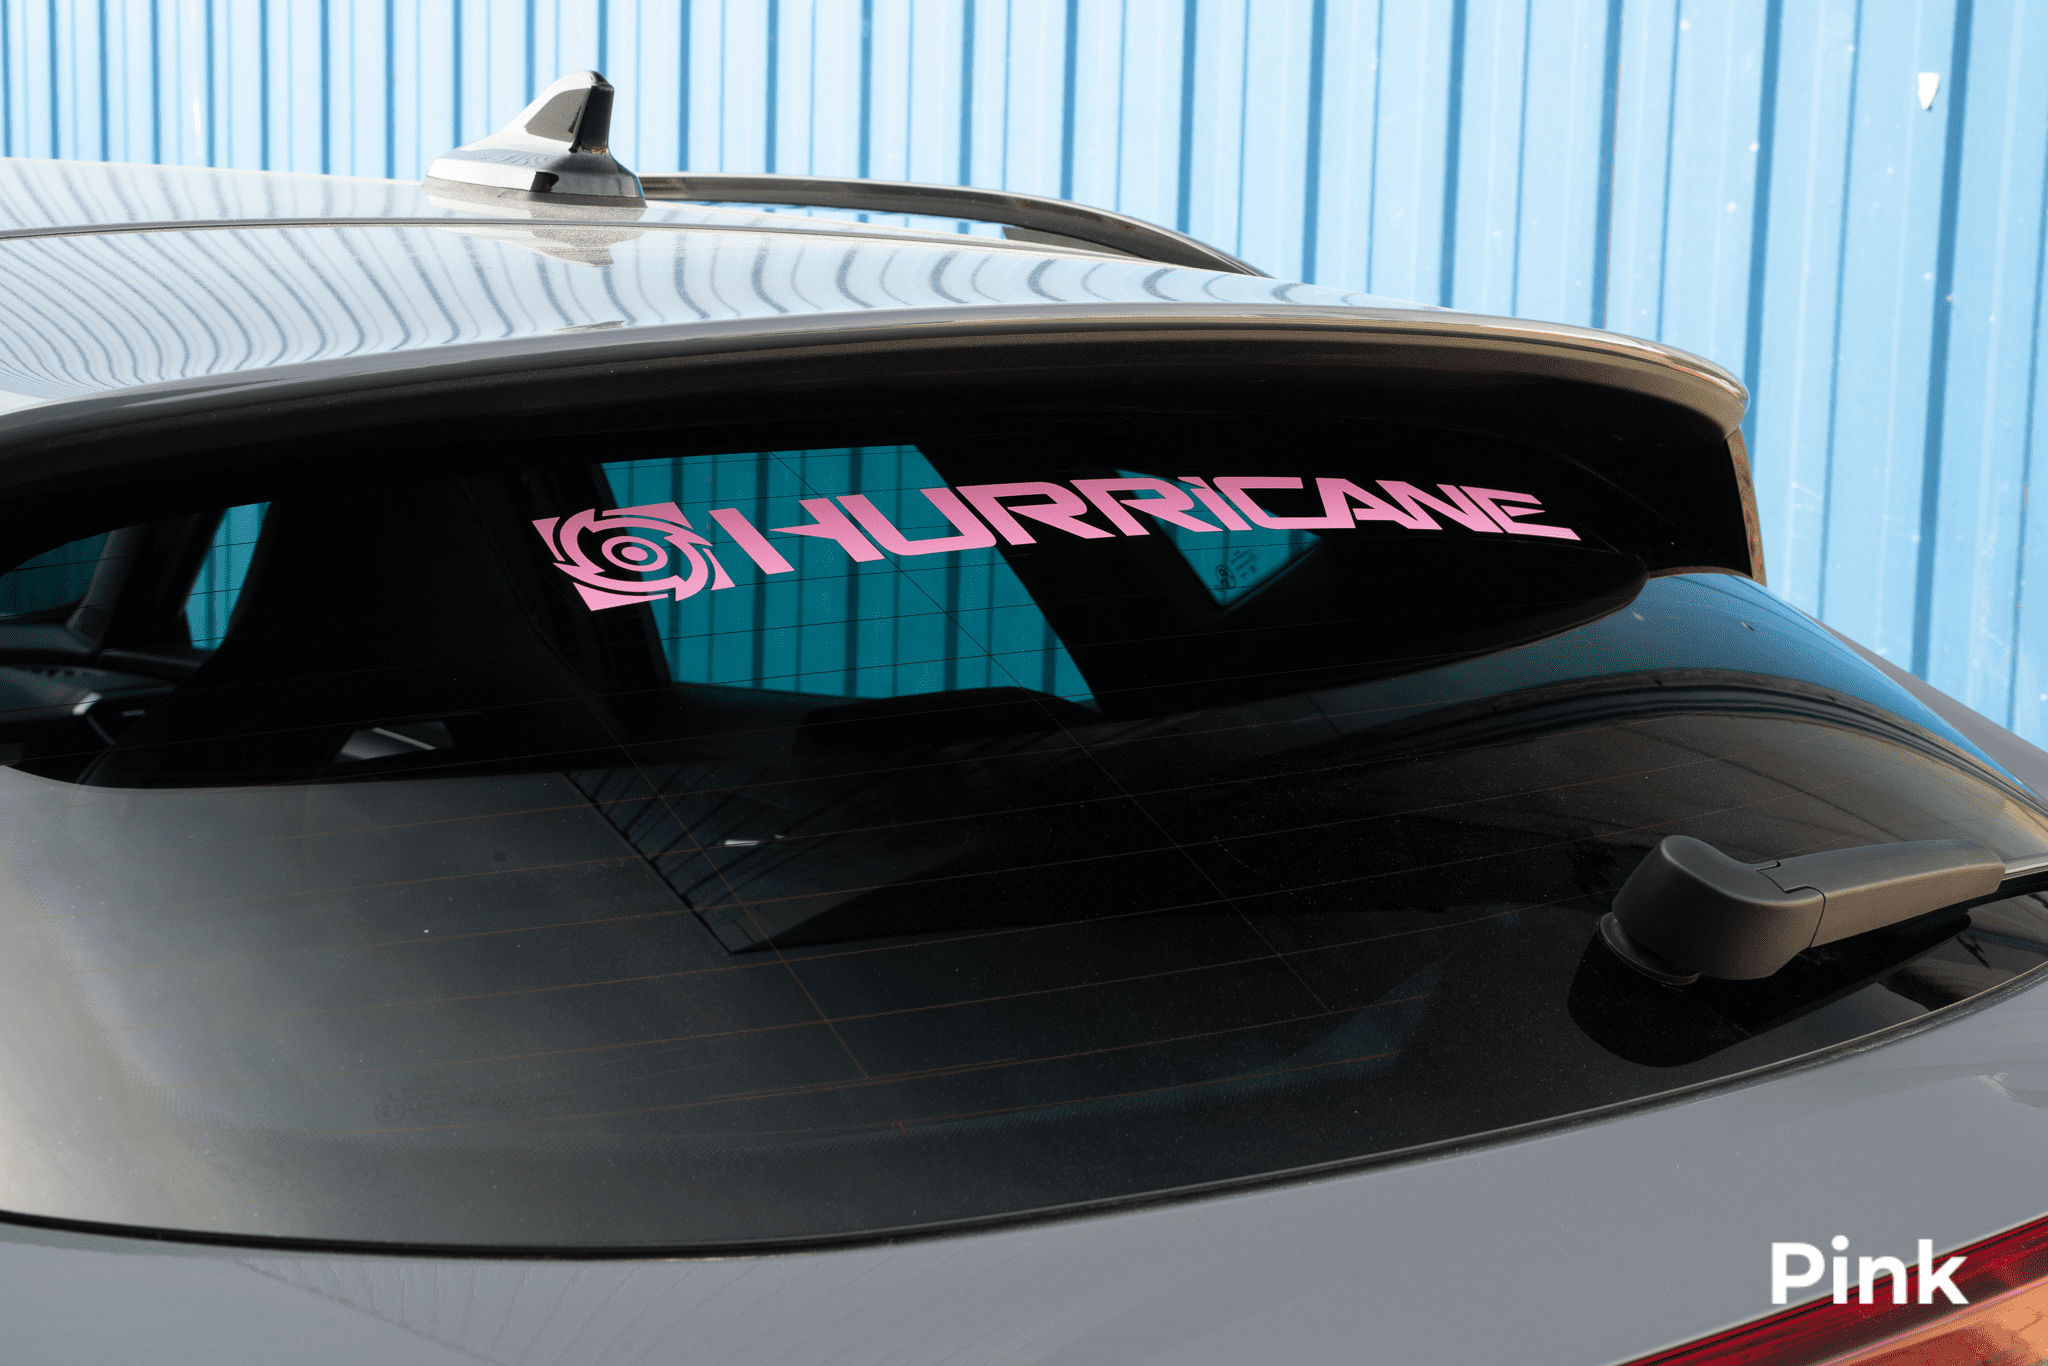 Hurricane Autoaufkleber für Karosserien und Scheiben